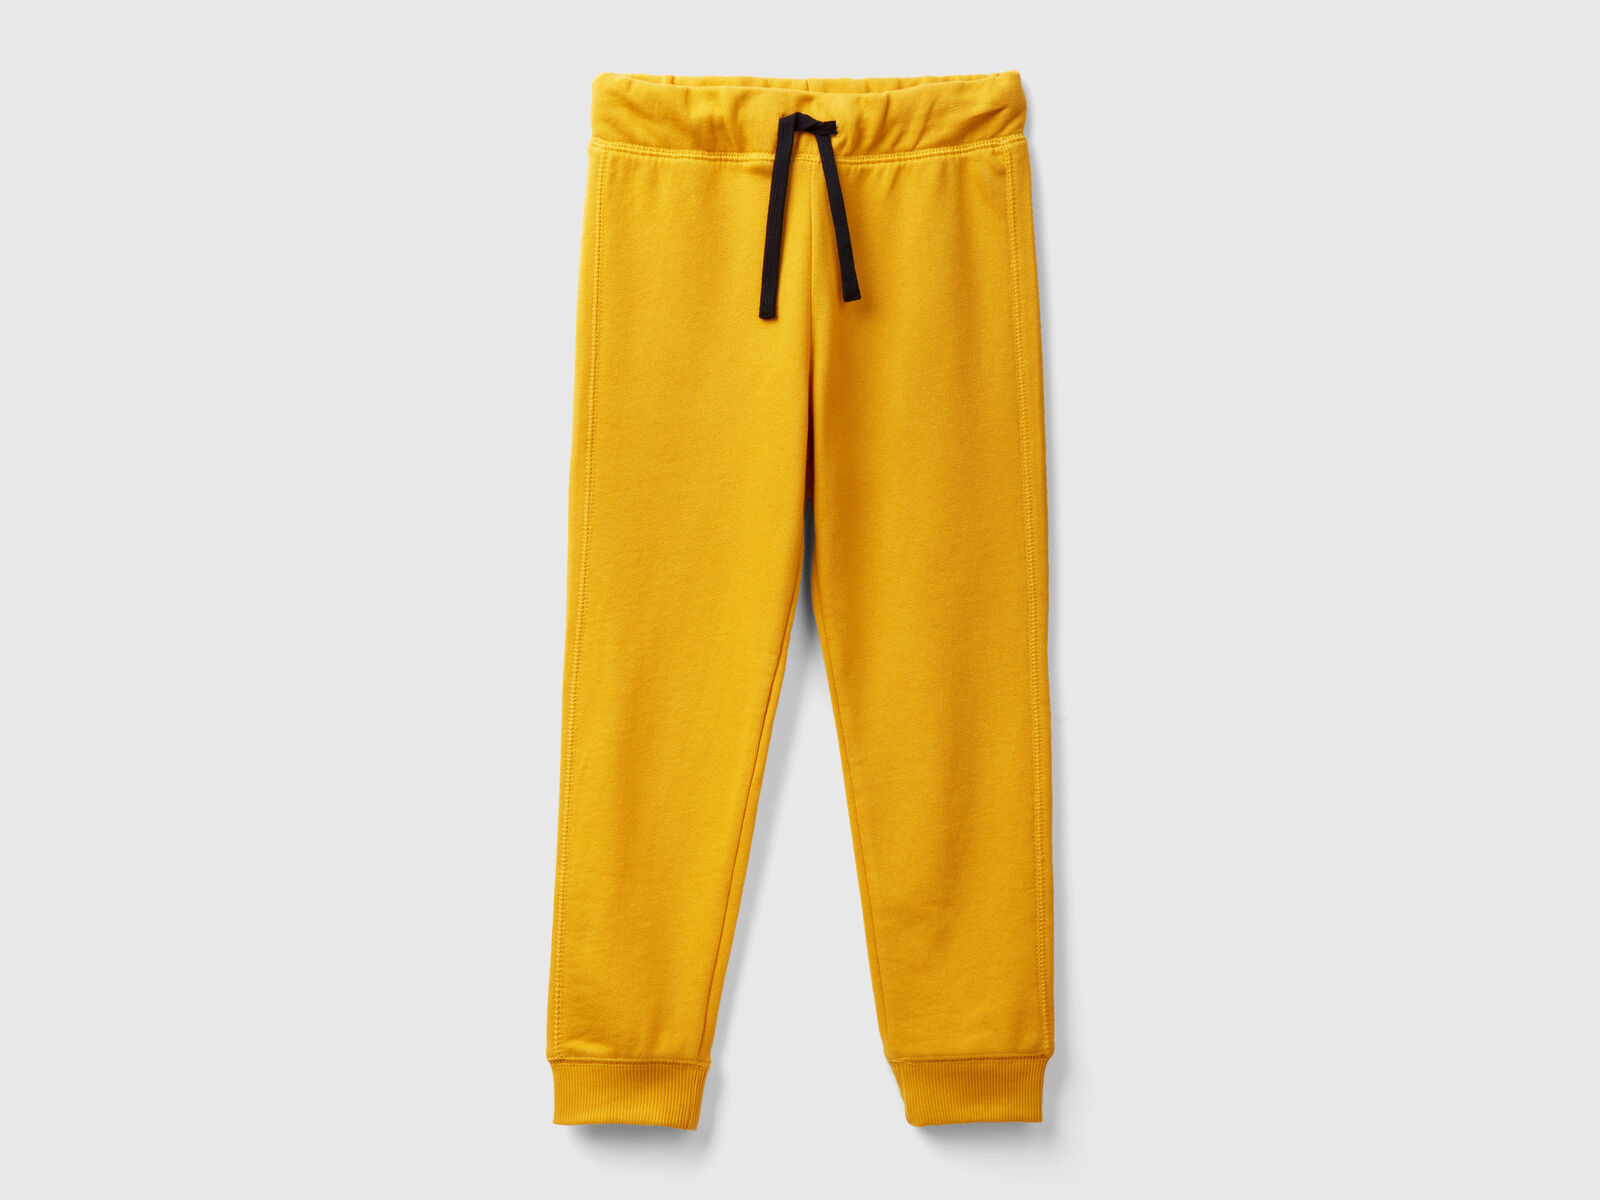 Pantalon de jogging homme - 100% coton